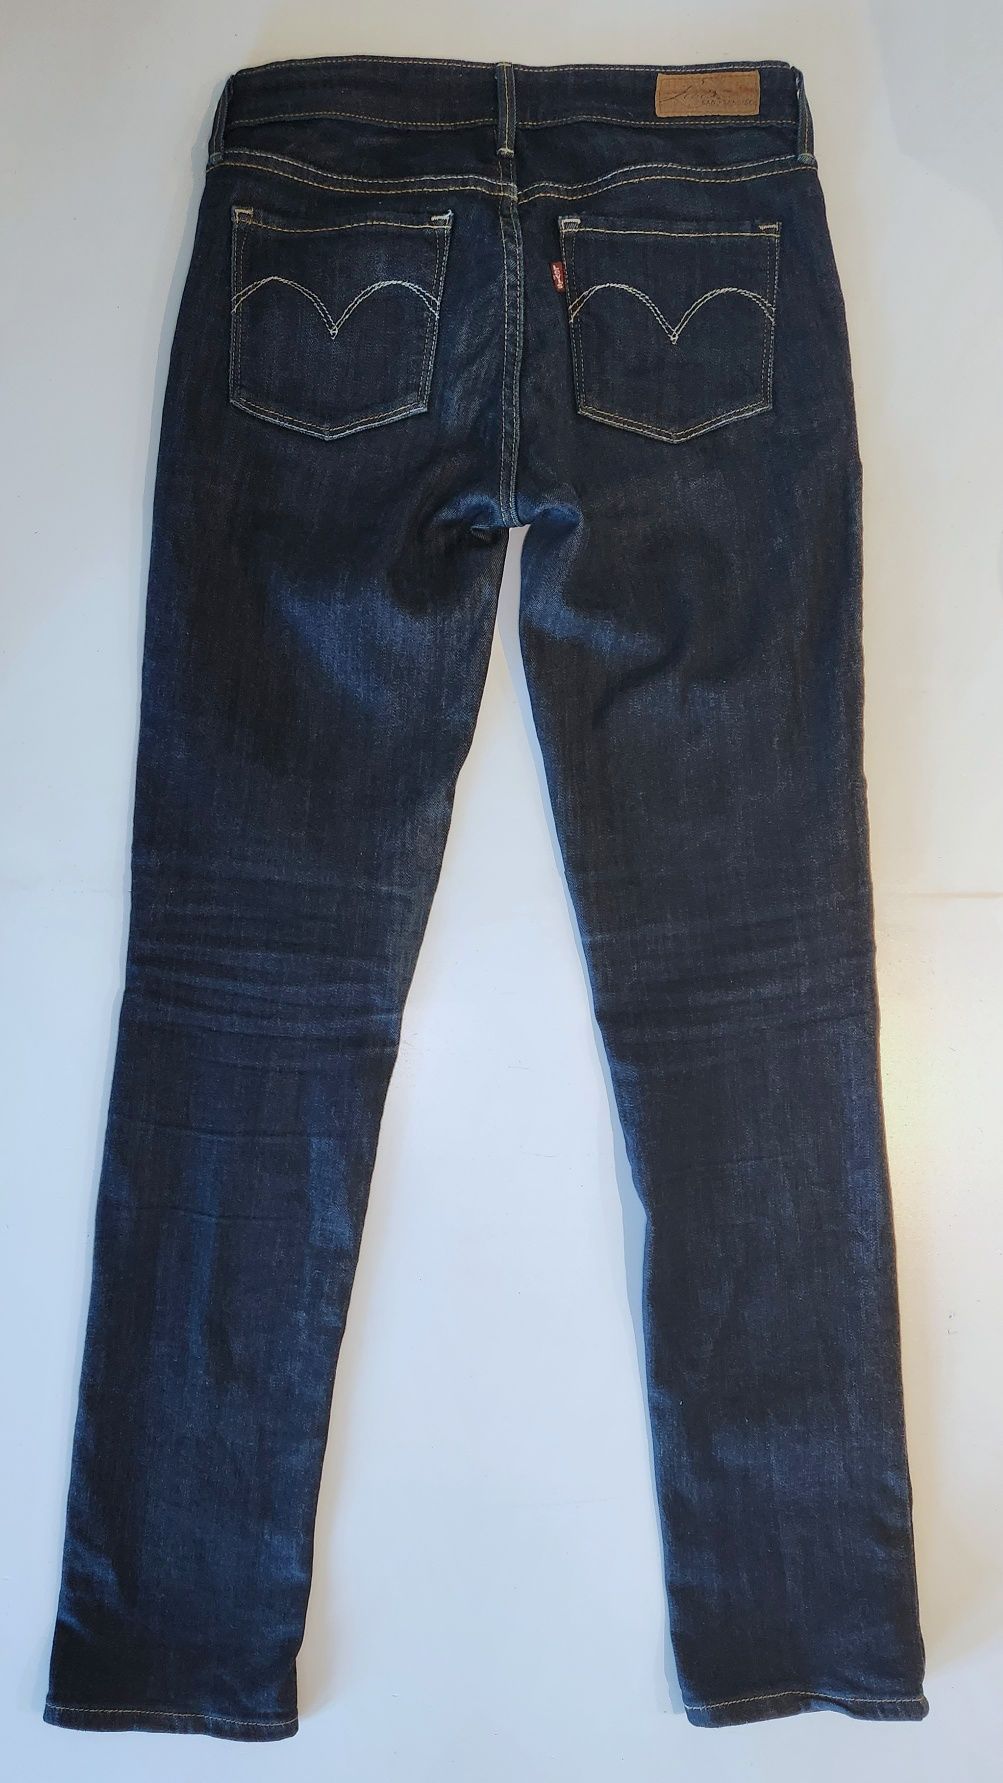 Spodnie Jeans LEVIS SLIGHT CURVE rozmiar 26